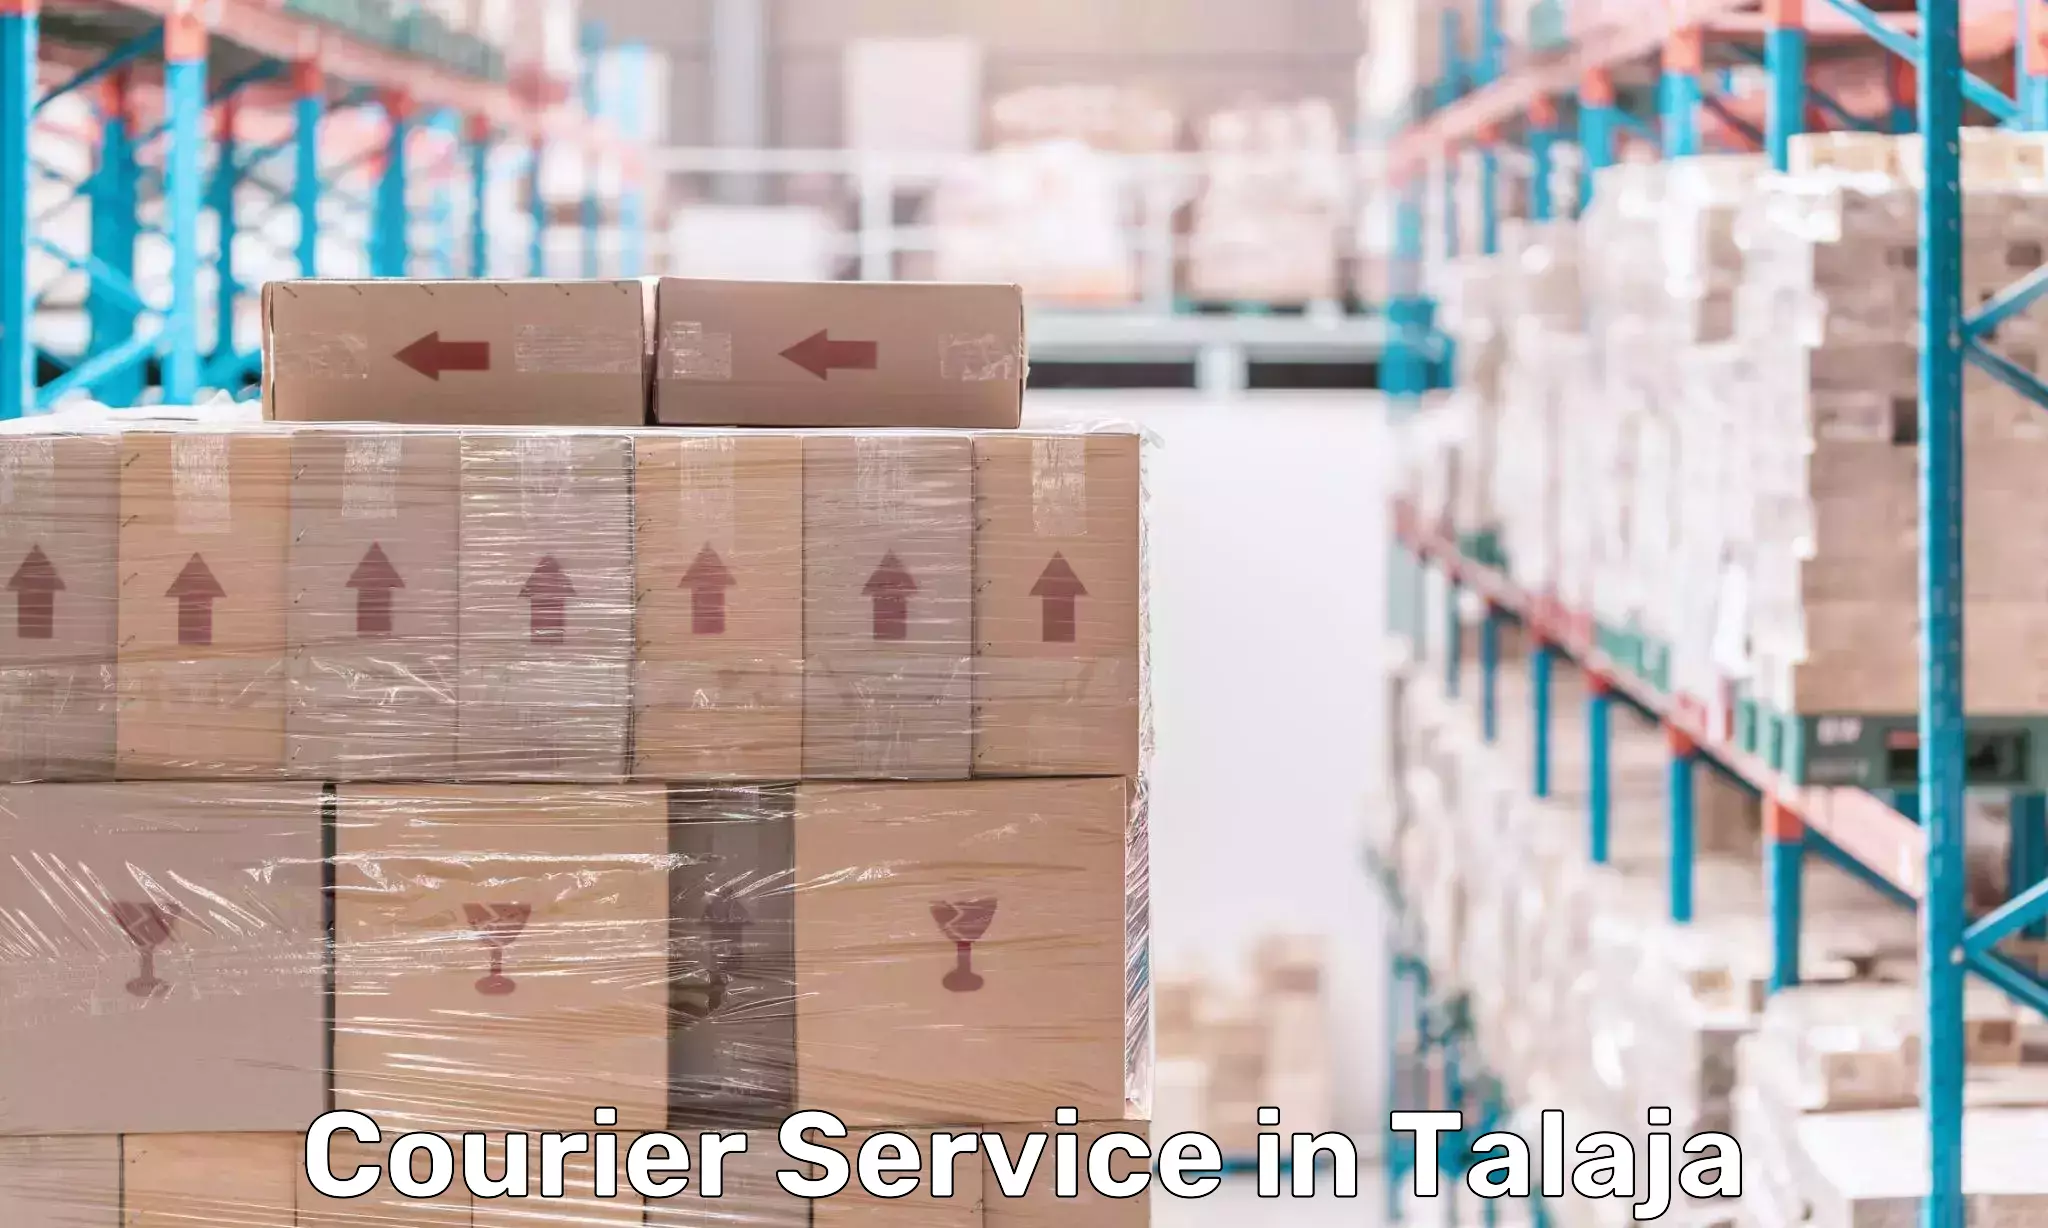 Express logistics providers in Talaja